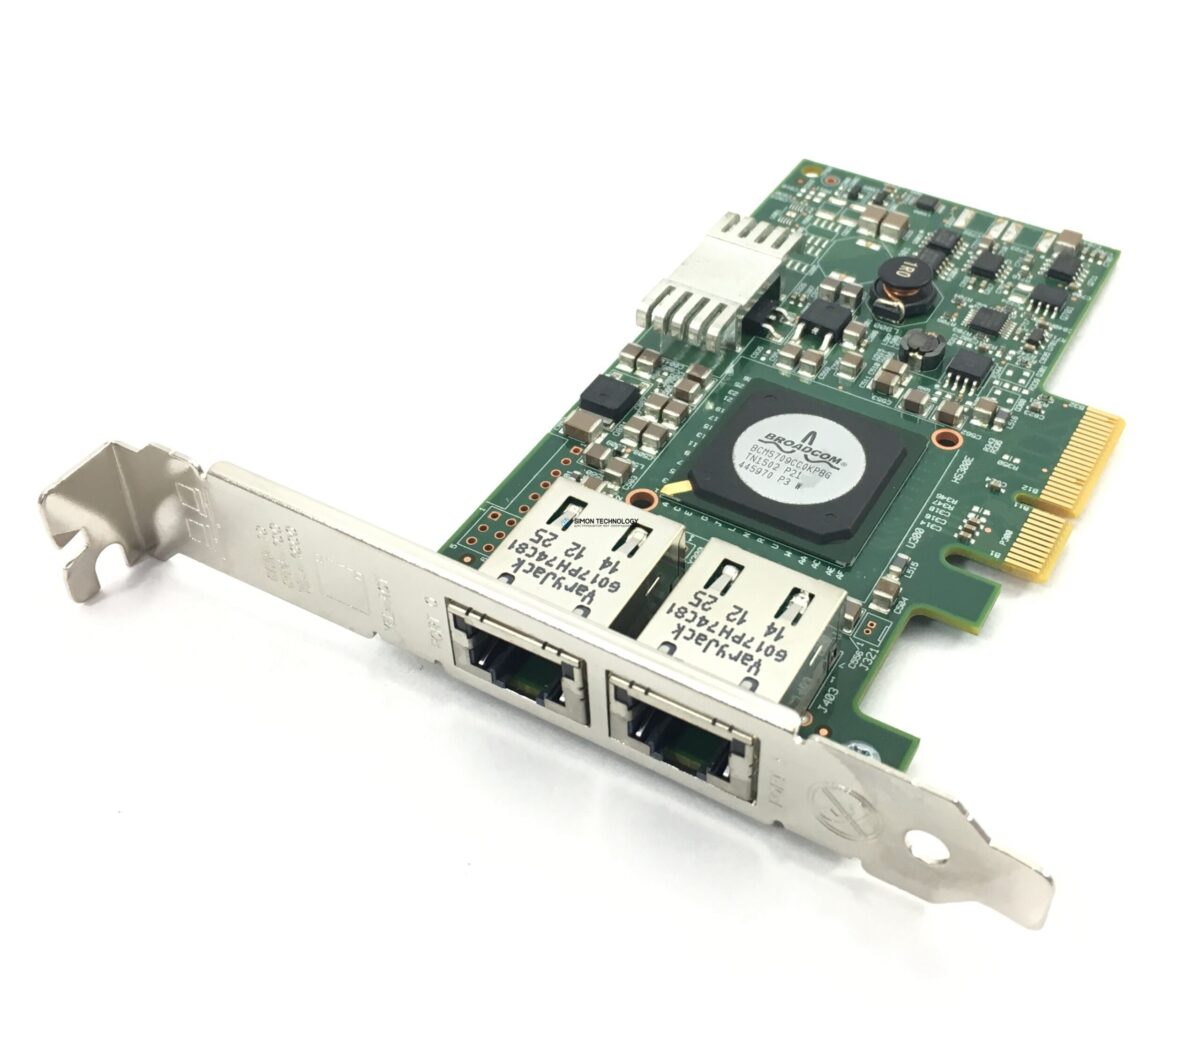 Сетевая карта Cisco CISCO Broadcom 5709 Dual-Port Ethernet PCIe Adapter for M3 Servers (N2XX-ABPCI01-M3)